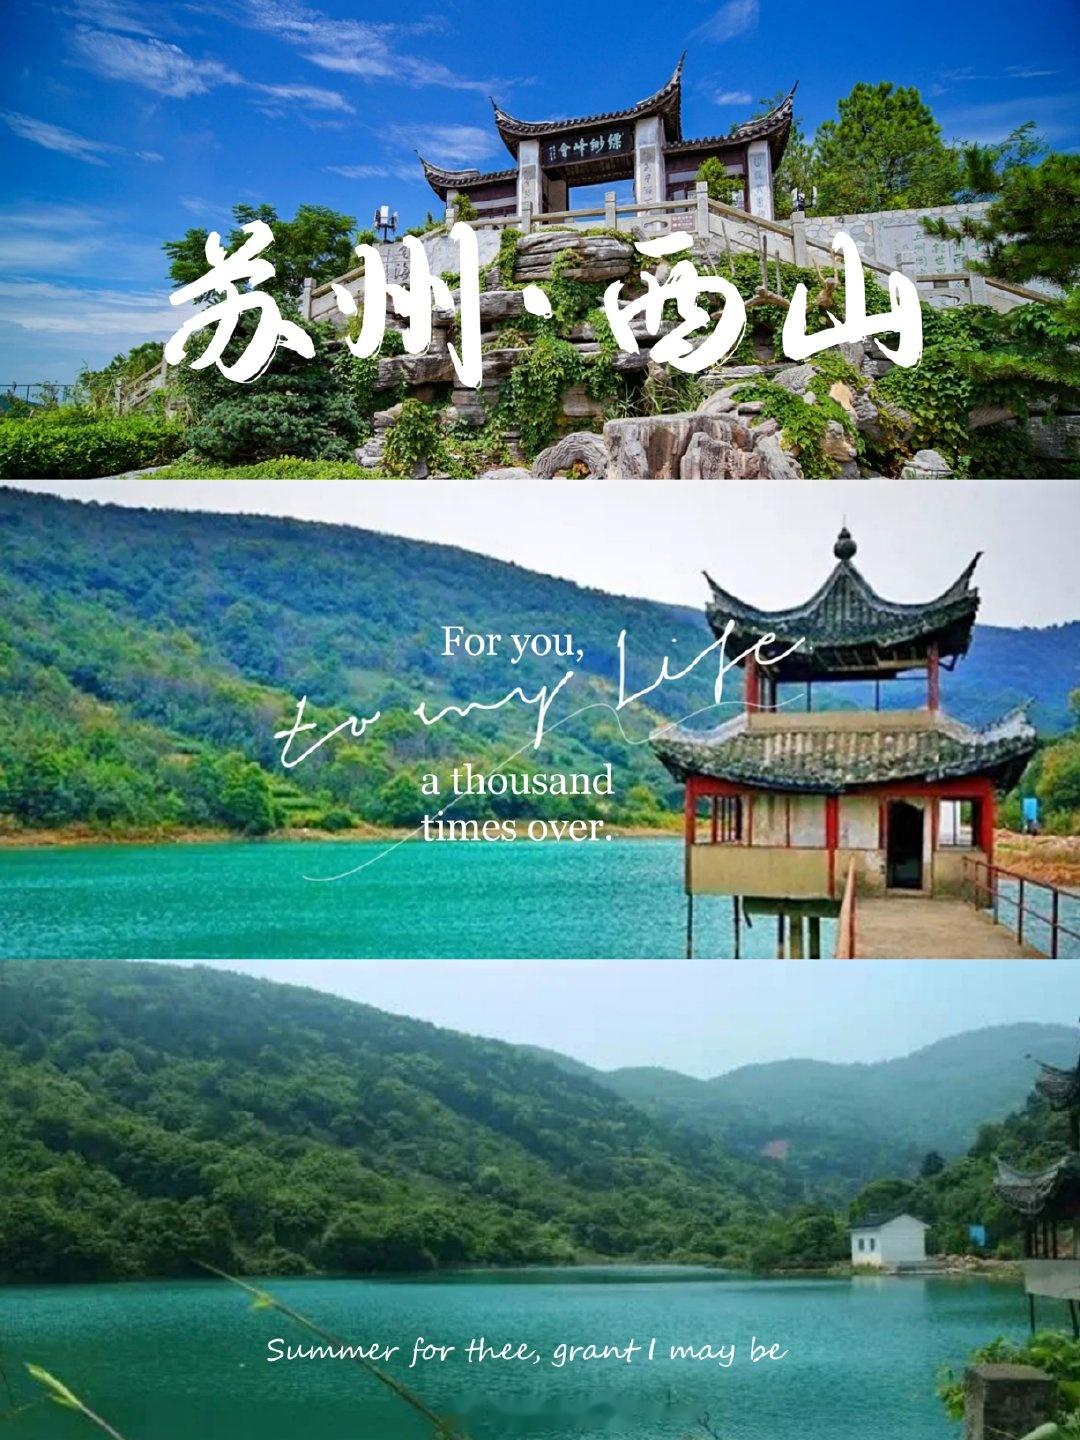 太湖西山风景区门票图片